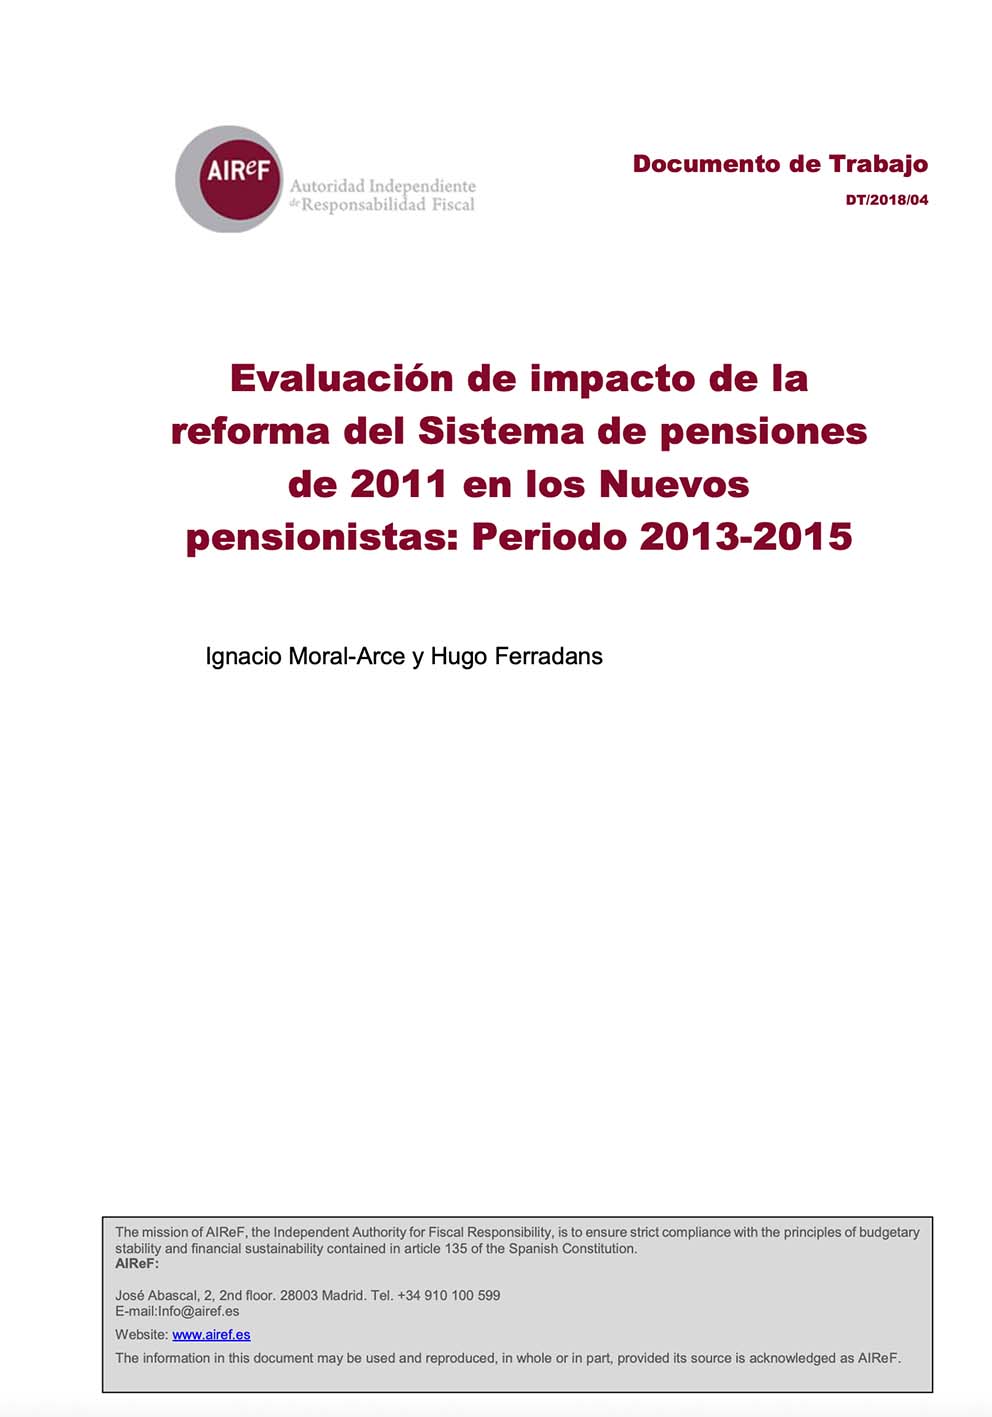 Evaluación de impacto de la reforma del sistema de pensiones de 2011 en los nuevos pensionistas: Periodo 2013-2015